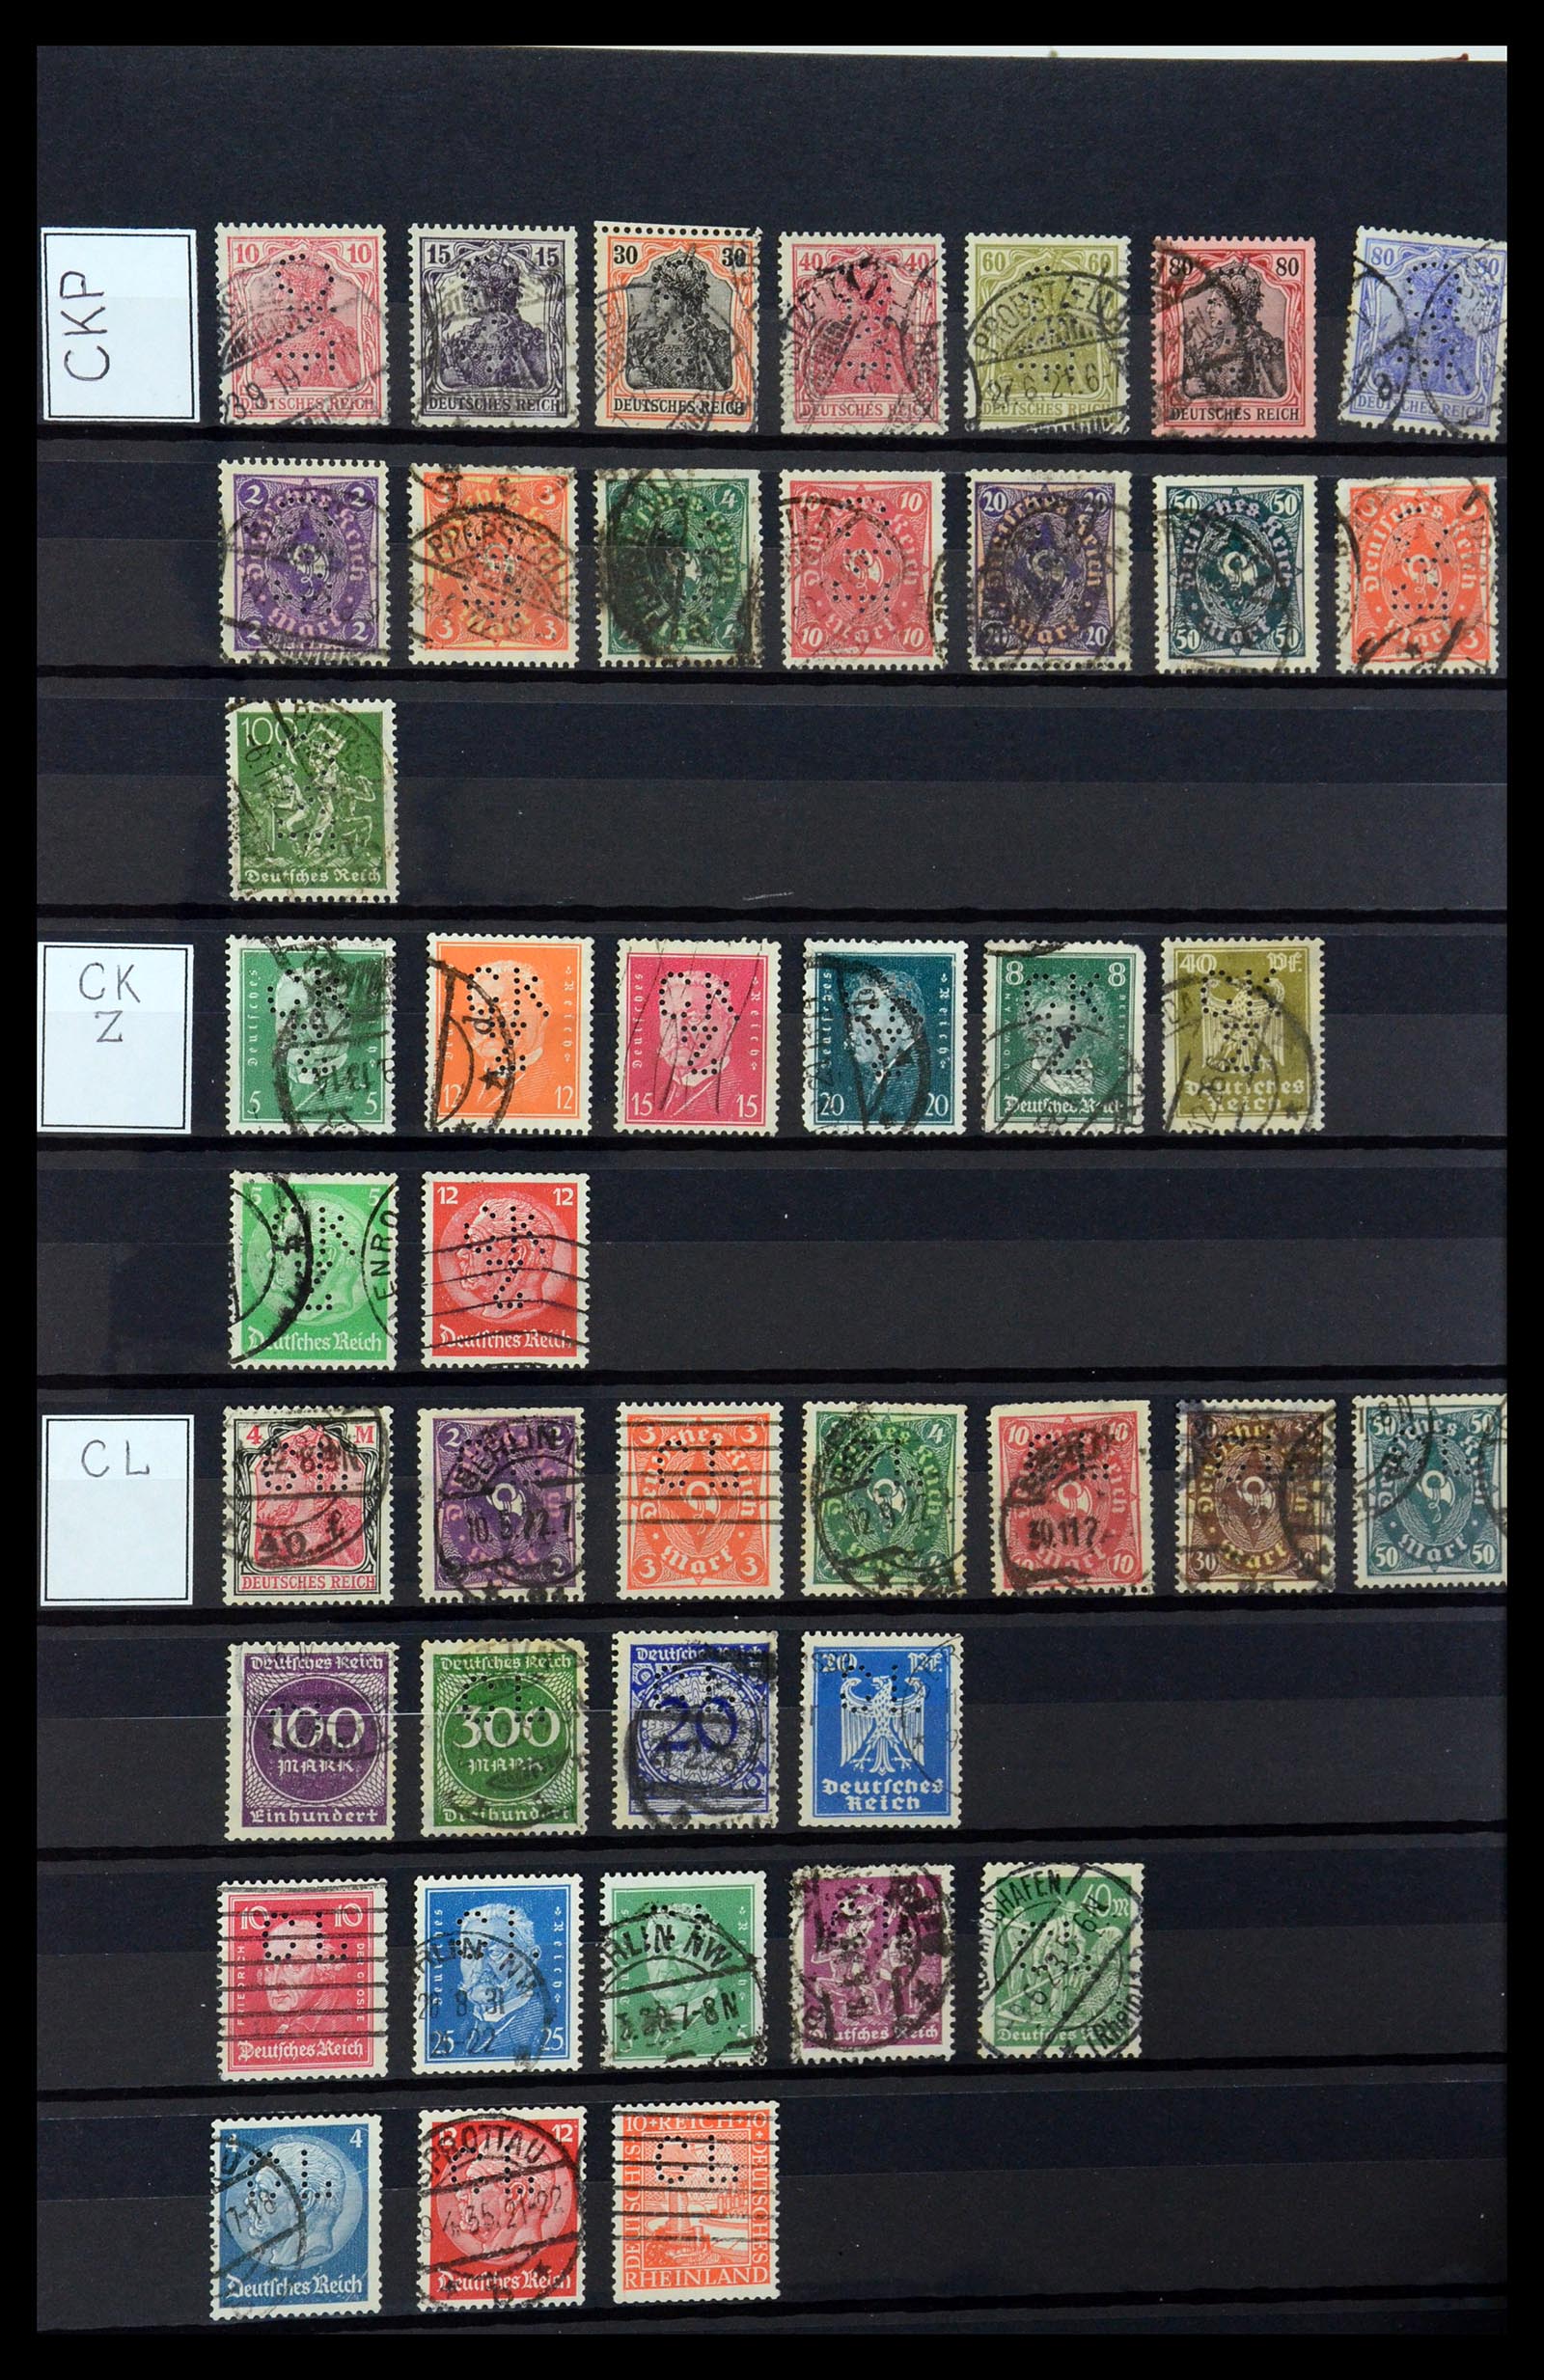 36405 074 - Stamp collection 36405 German Reich perfins 1880-1945.